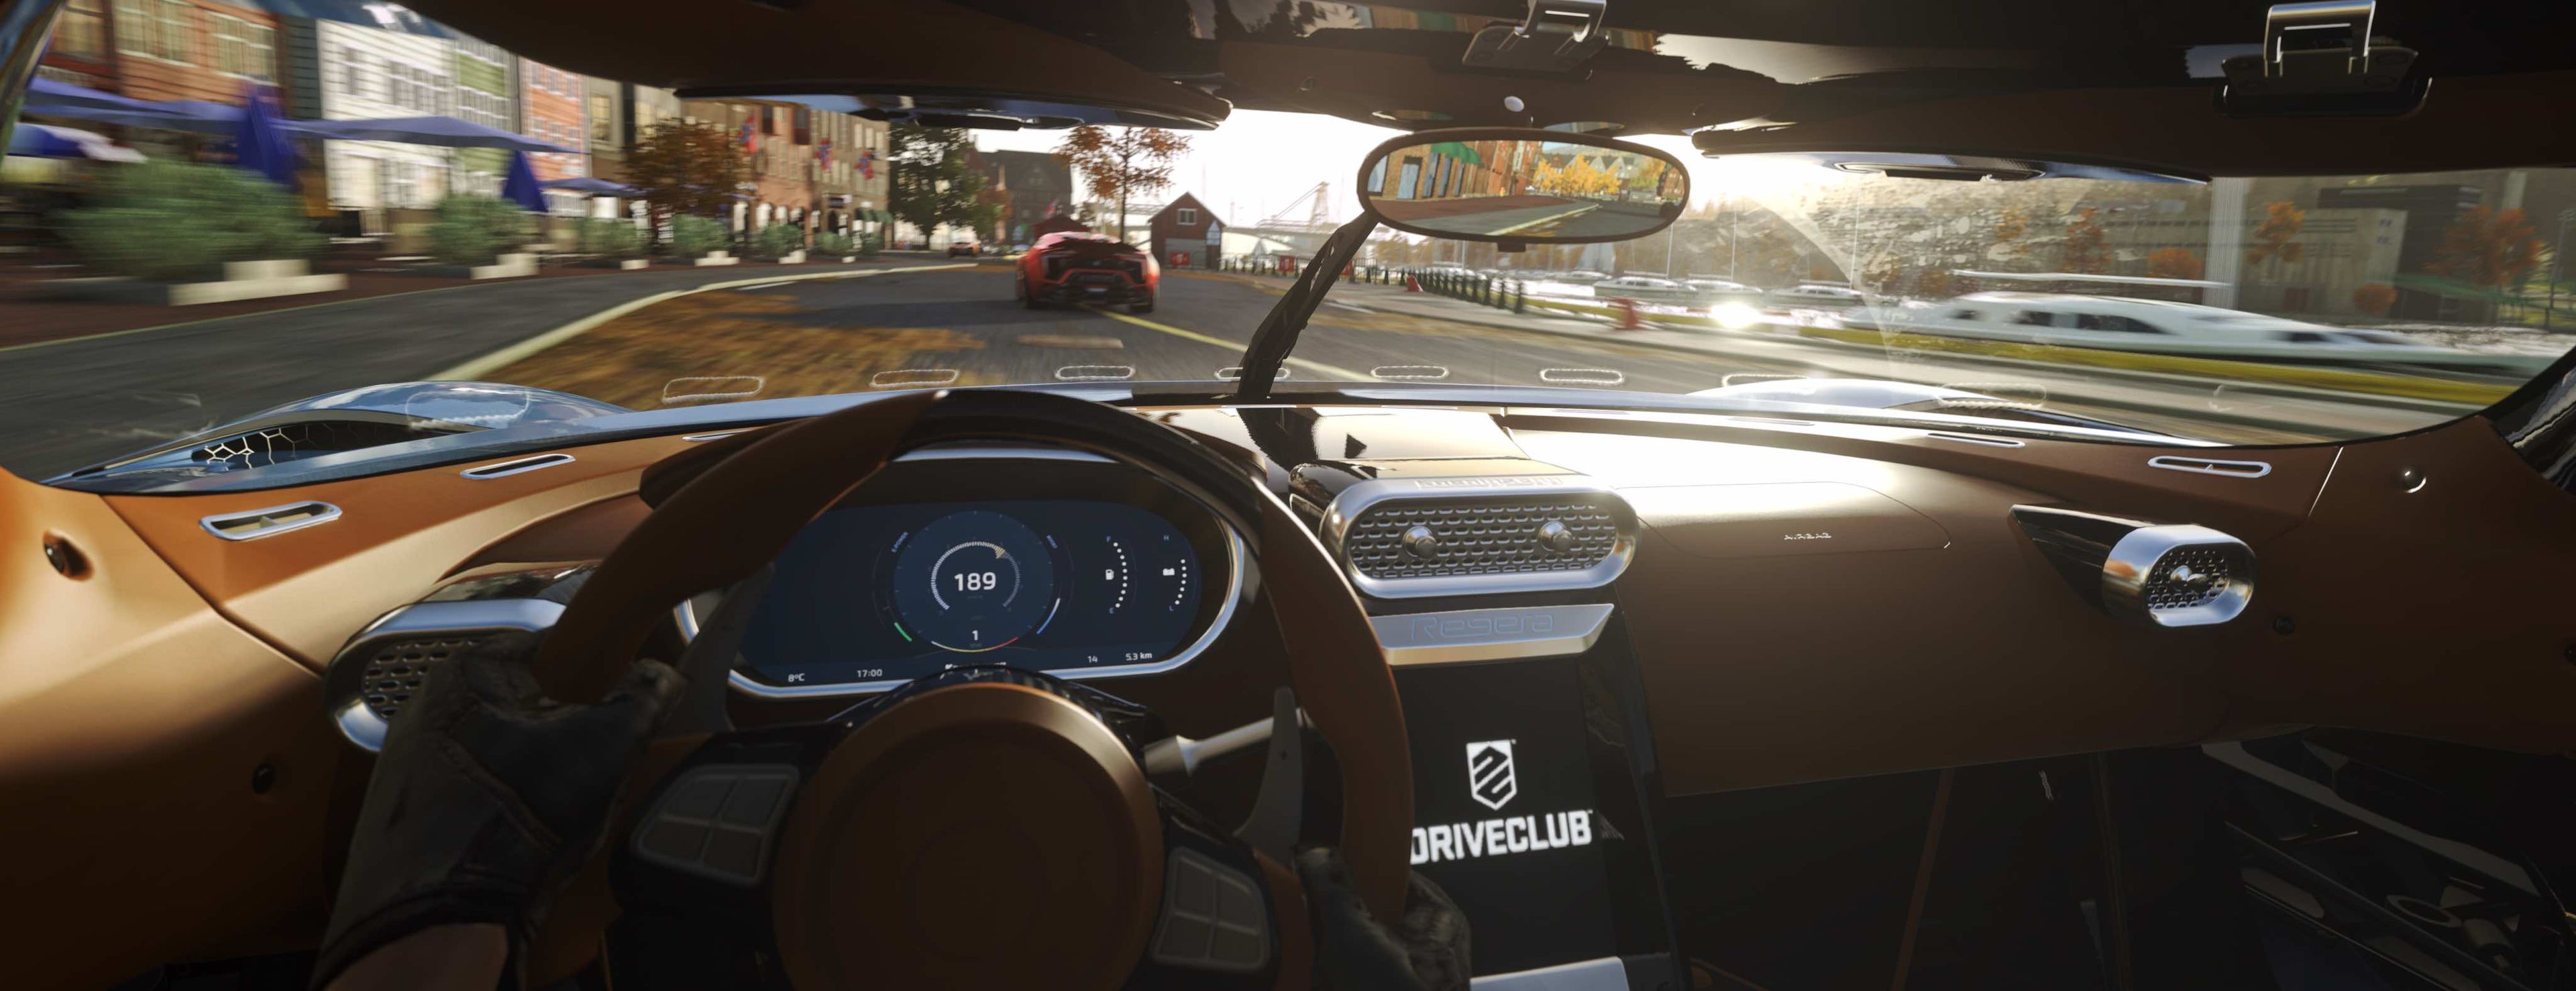 Driveclub VR presentará un nuevo interfaz. Sobre la pista apenas veremos indicadores, que se han movido a una pequeña pantalla a la derecha del volante.